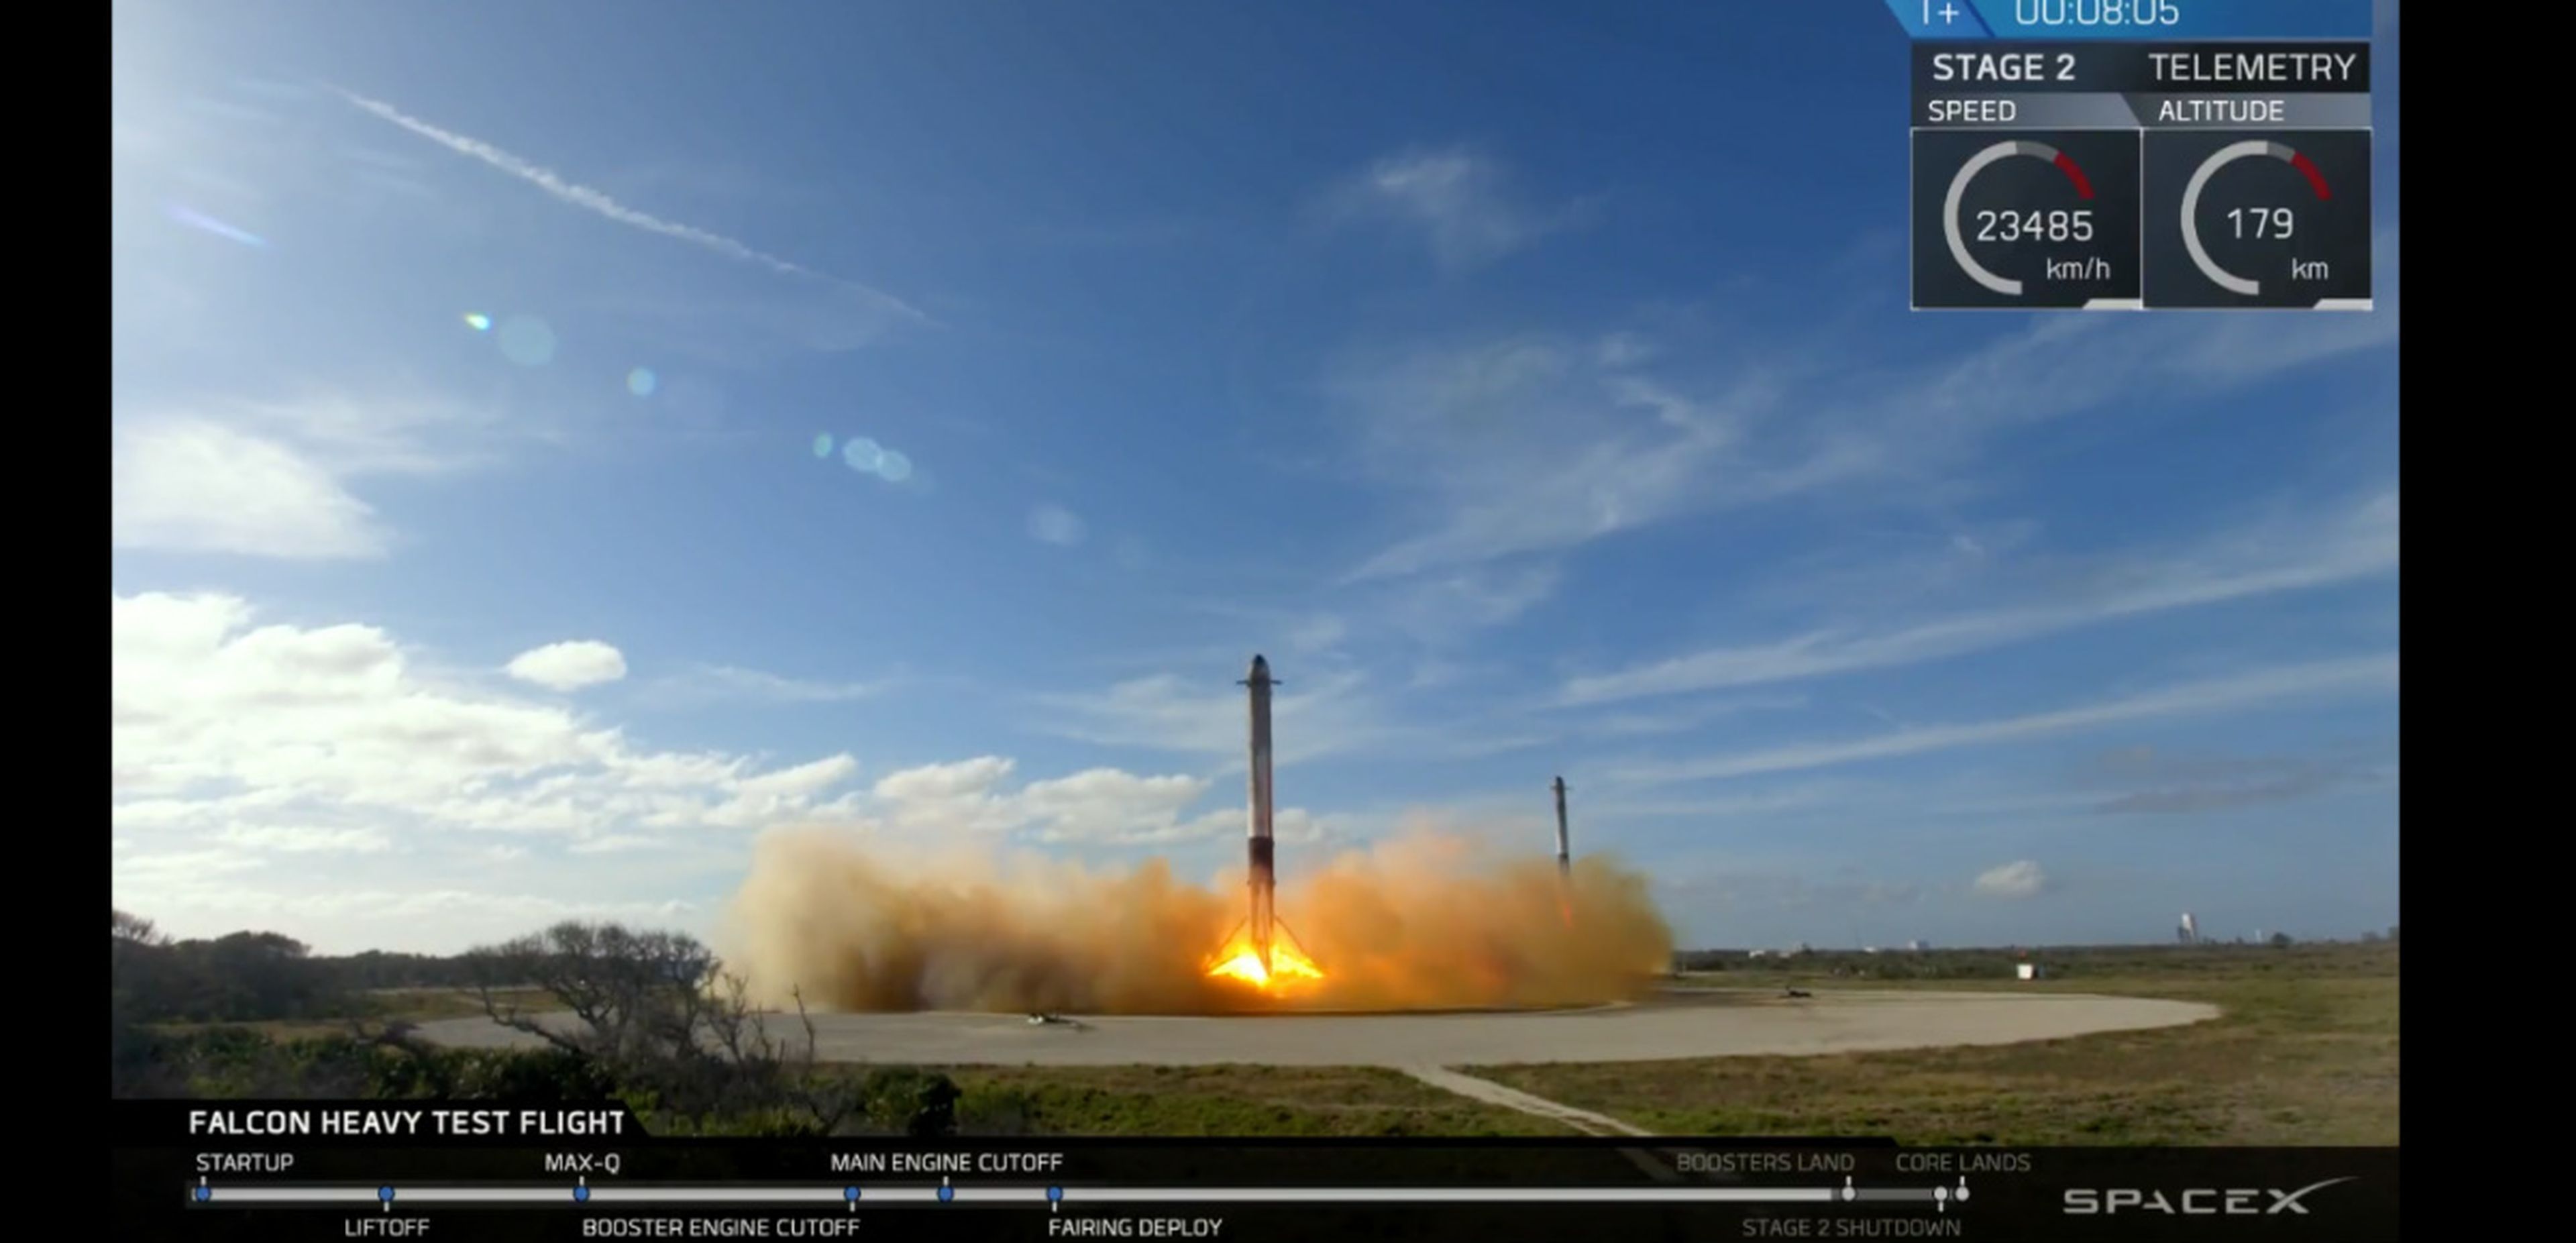 Los mejores momentos del lanzamiento del cochete Heavy Falcon de SpaceX